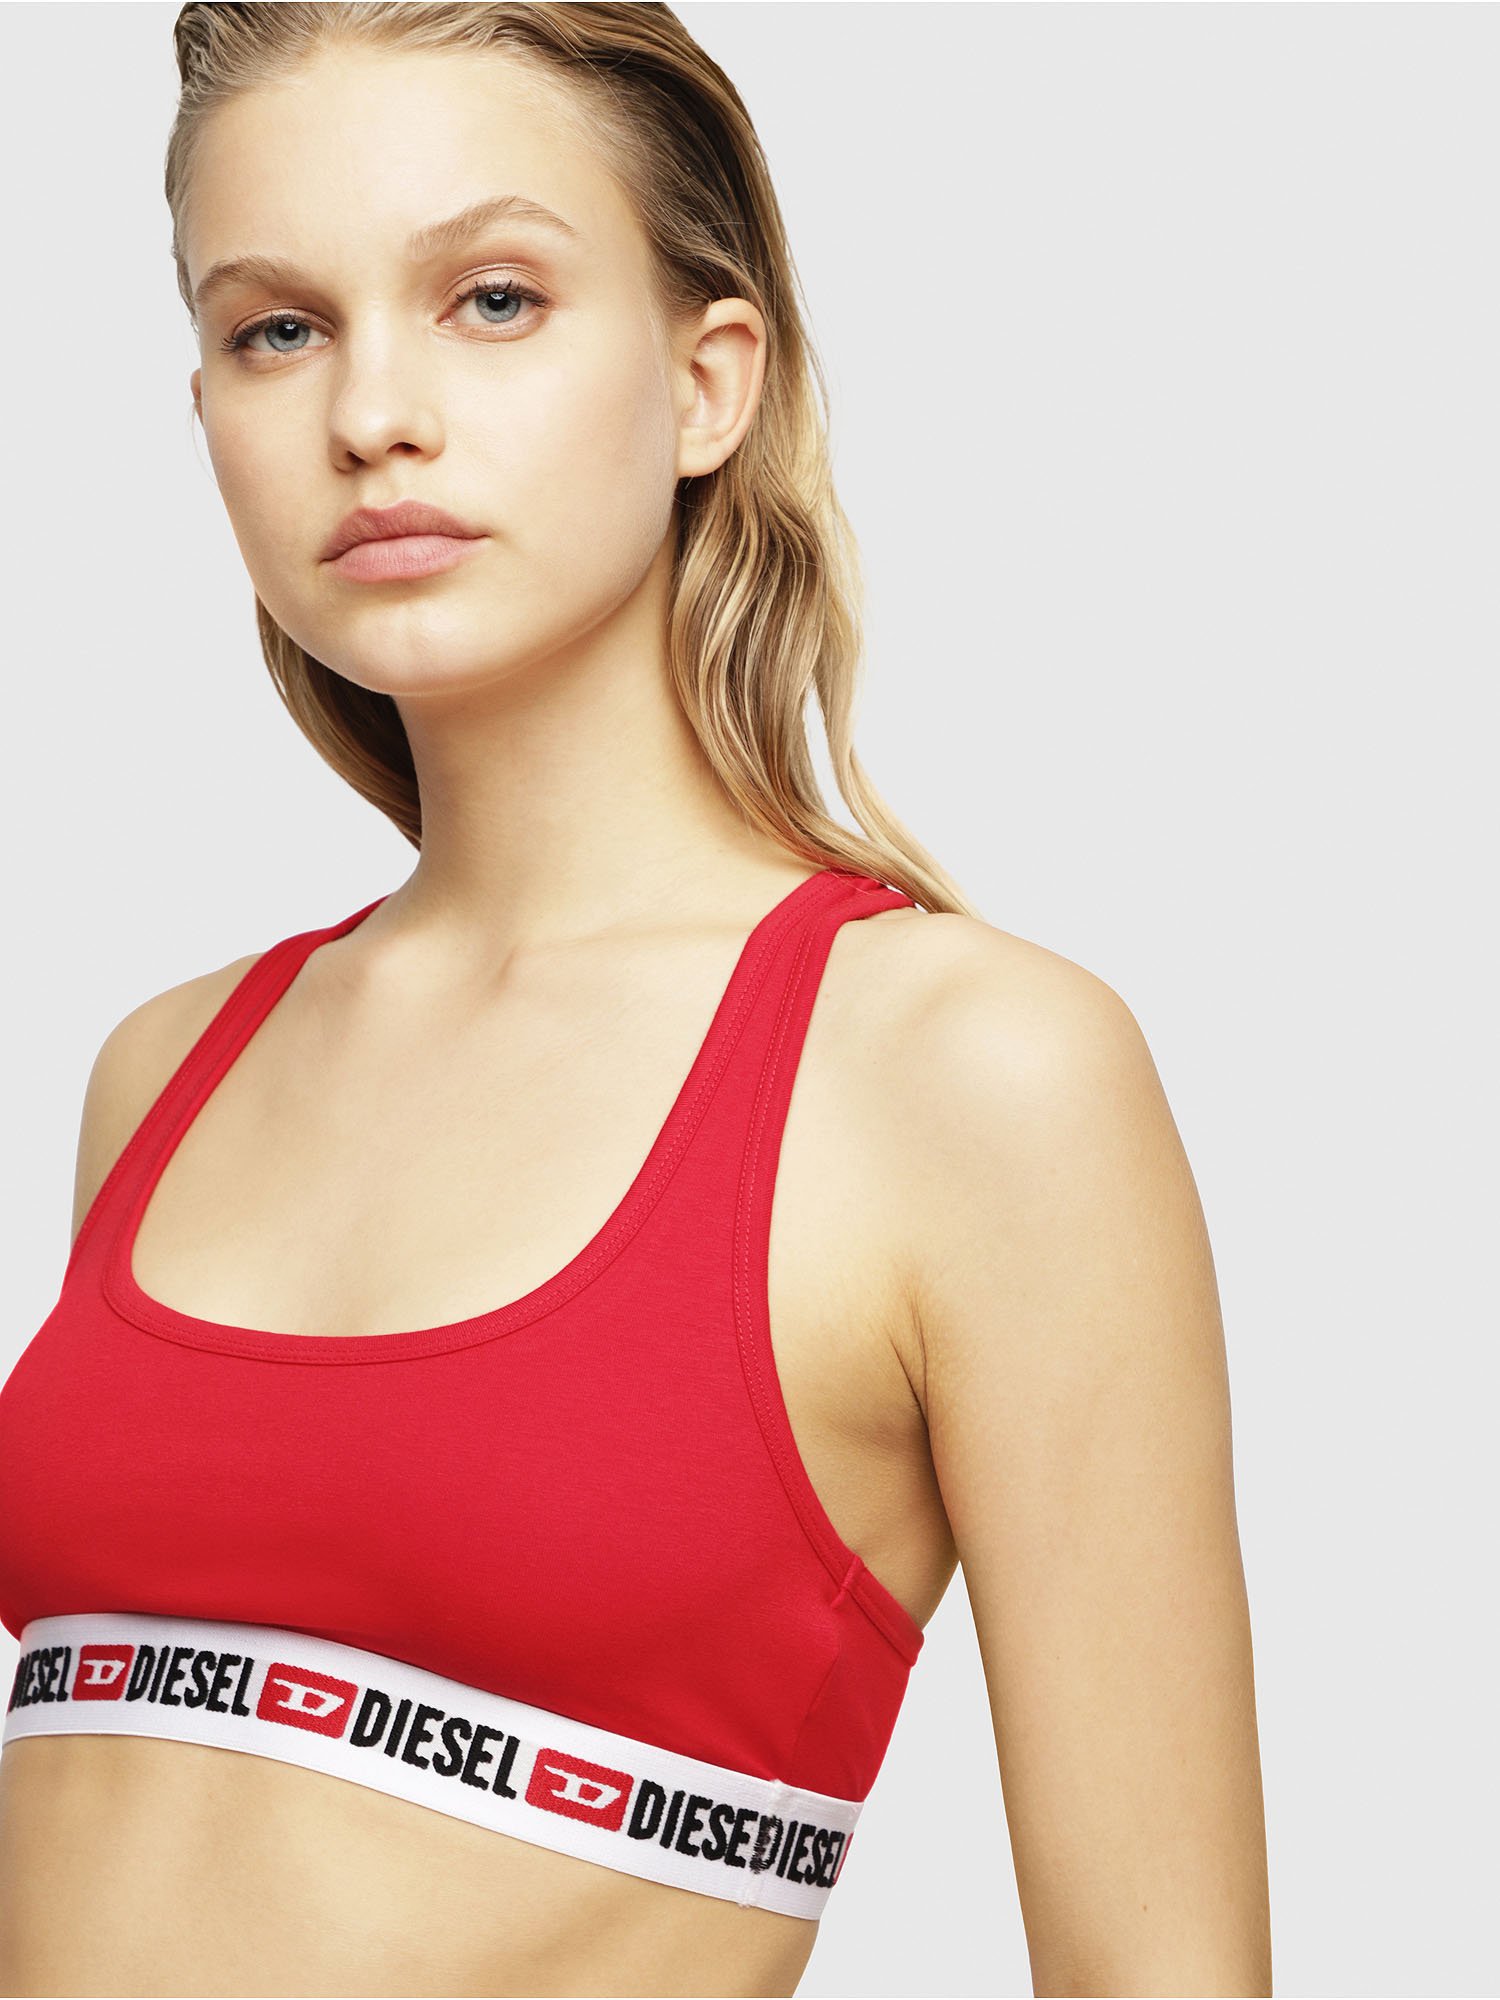 UFSB-MILEY Women: Sporty bra with denim division logo | Diesel